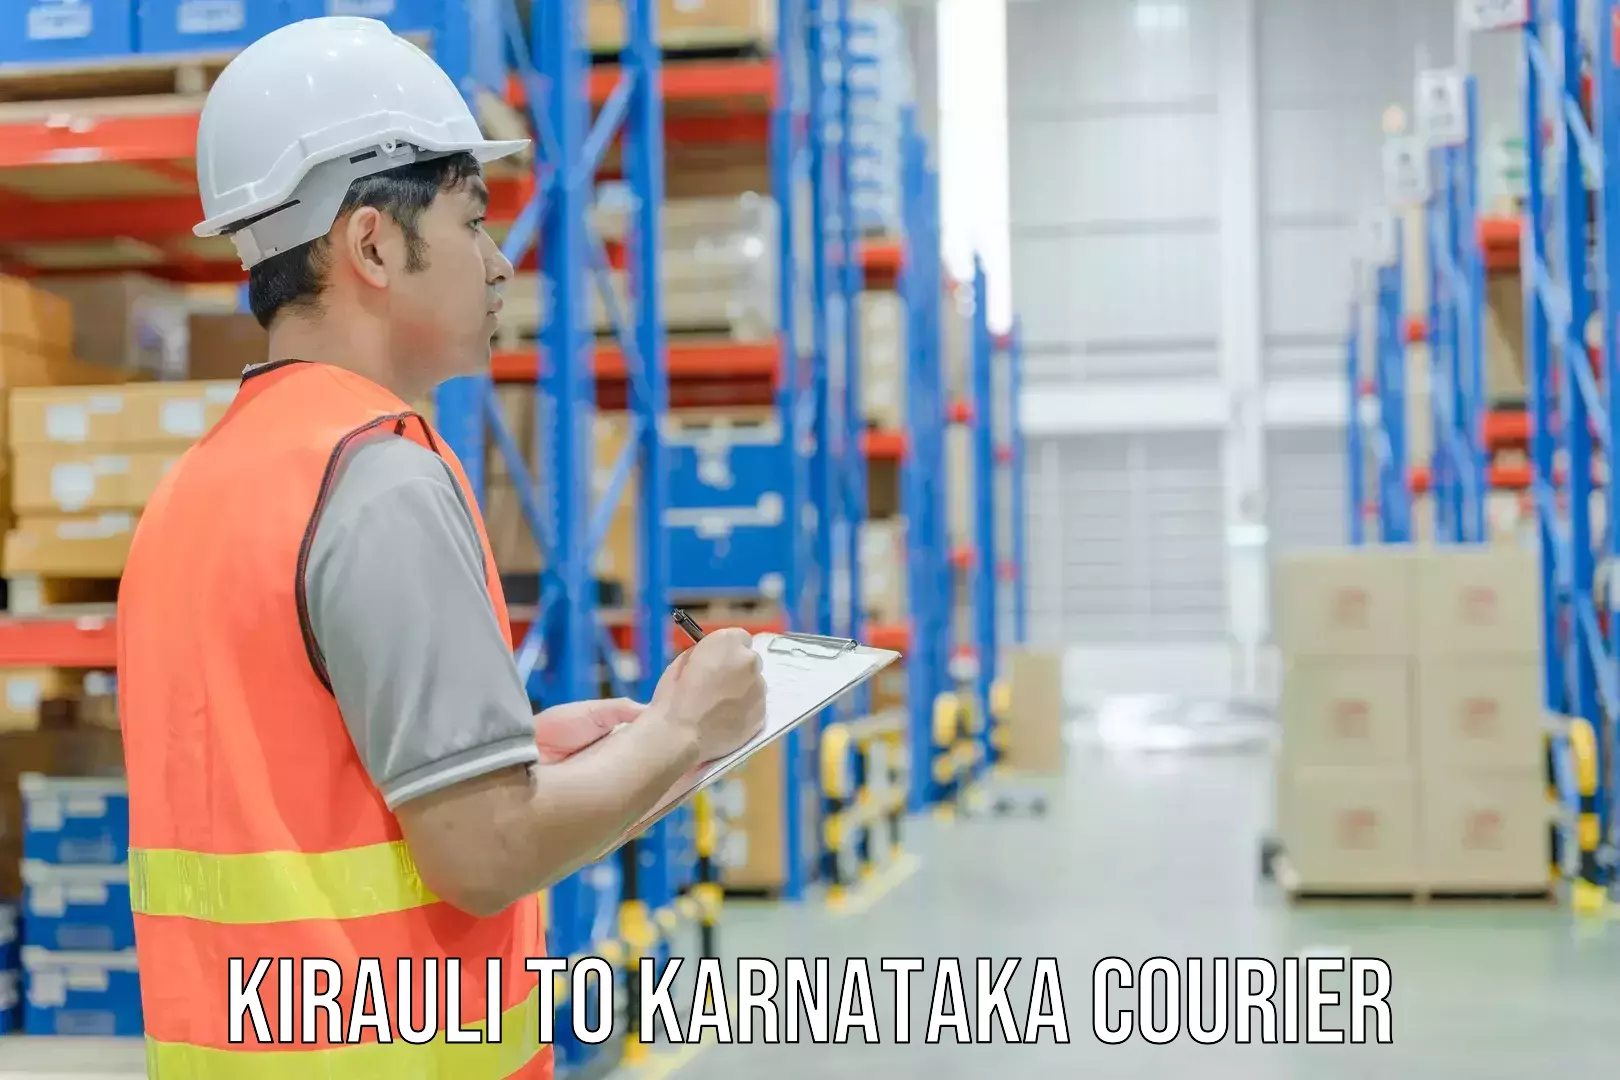 Expedited shipping methods Kirauli to Karnataka